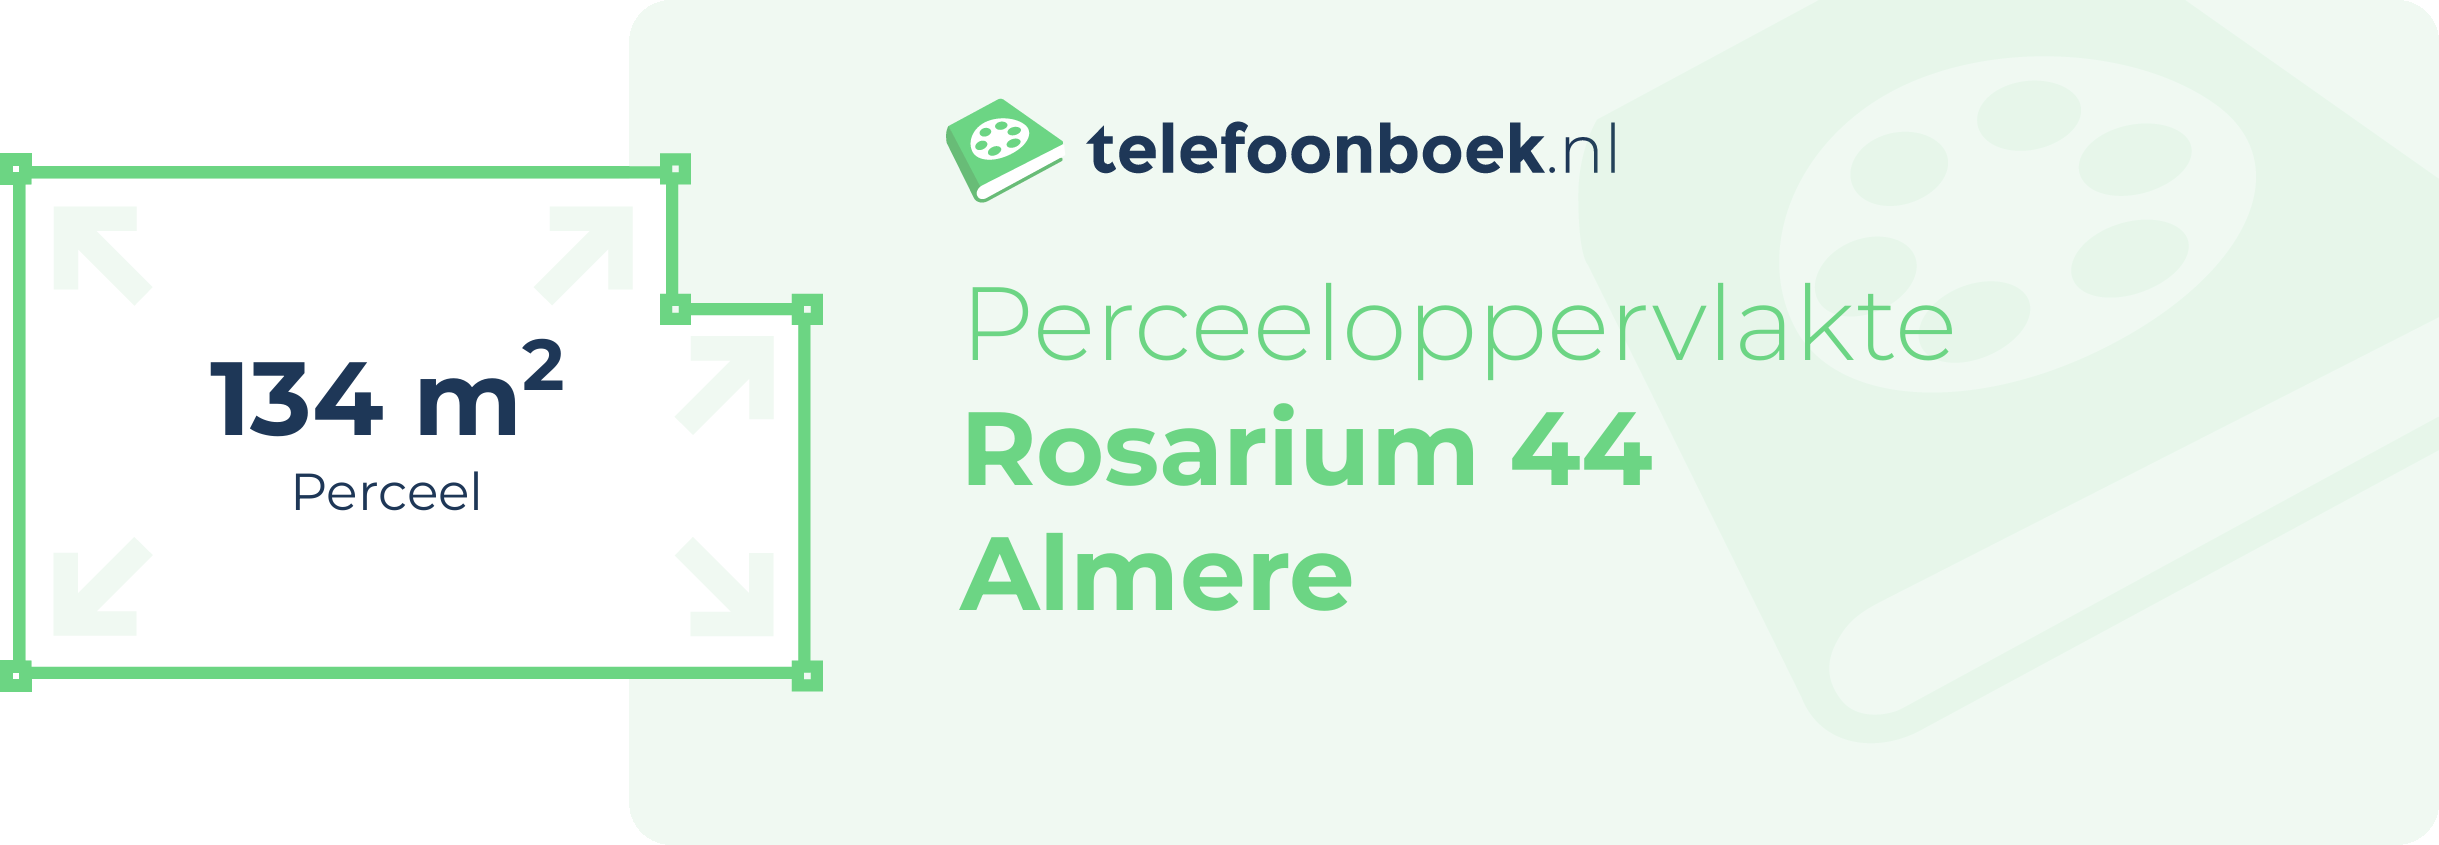 Perceeloppervlakte Rosarium 44 Almere